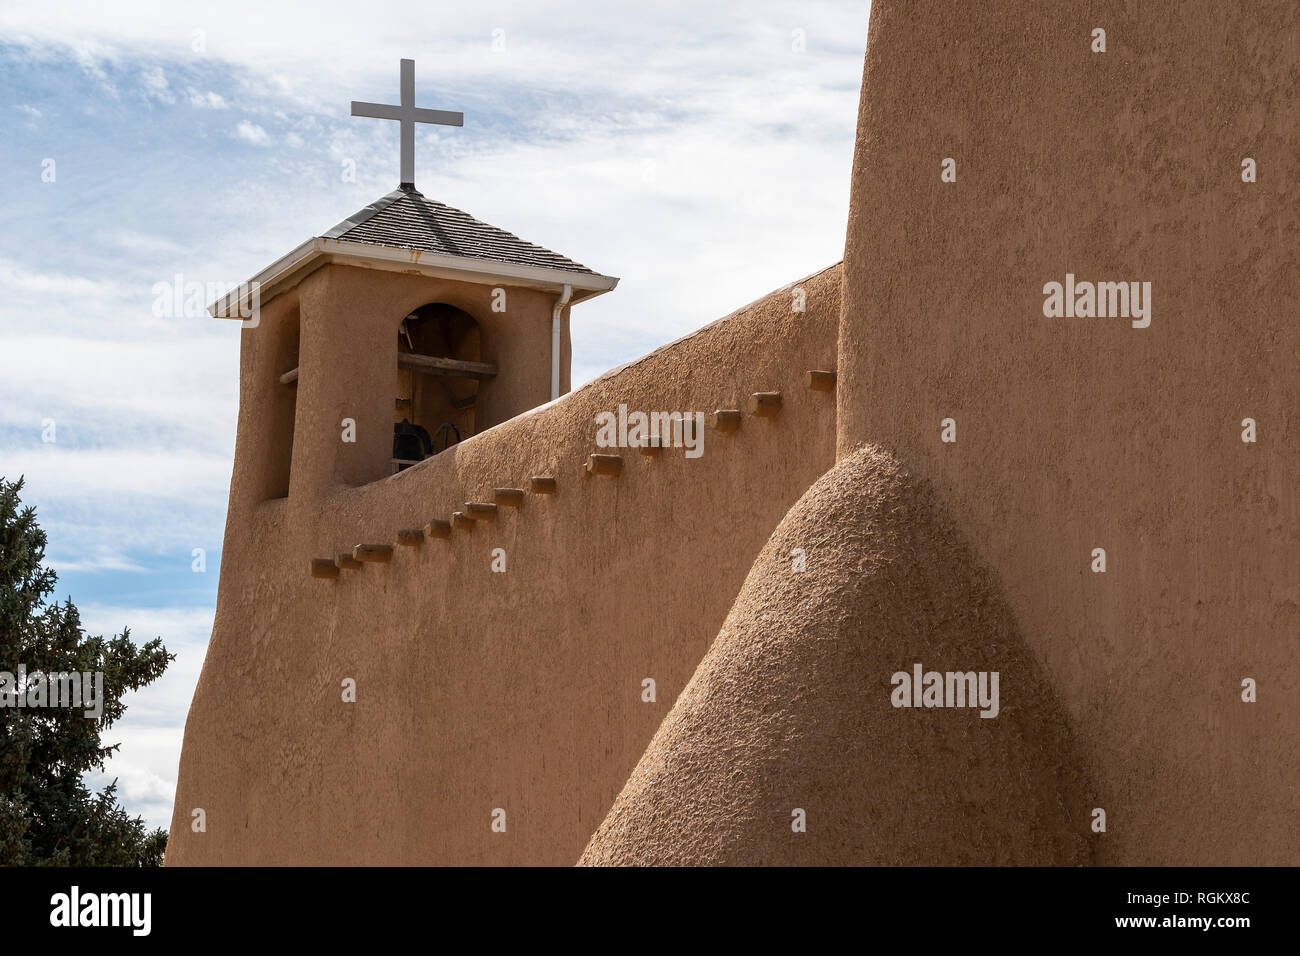 The adobe San Francisco de Asis church in Ranchos de Taos, New Mexico, USA Stock Photo